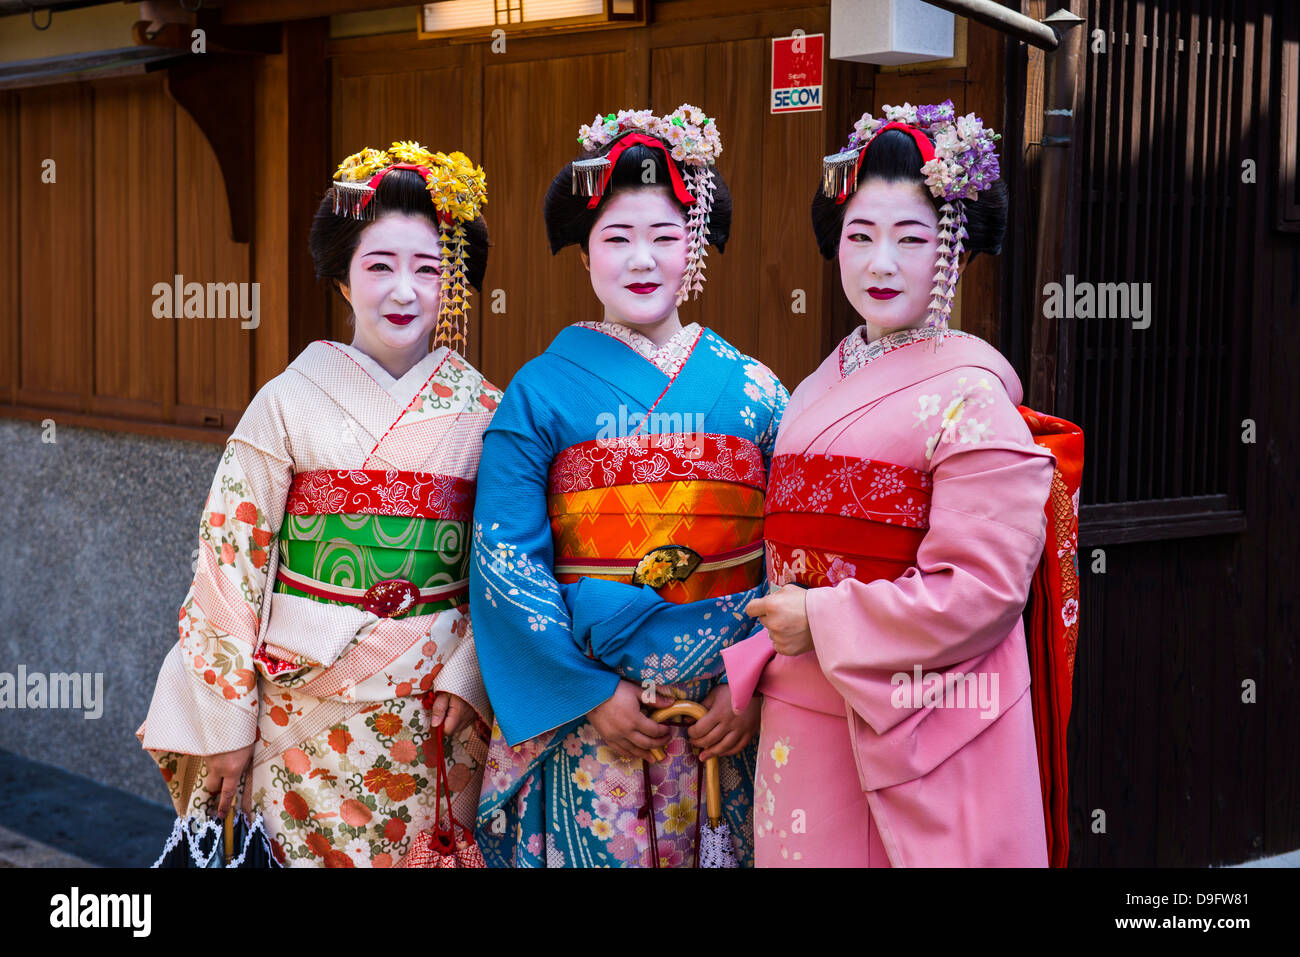 Traditionell gekleidete Geishas in der Altstadt von Kyoto, Japan Stockfoto